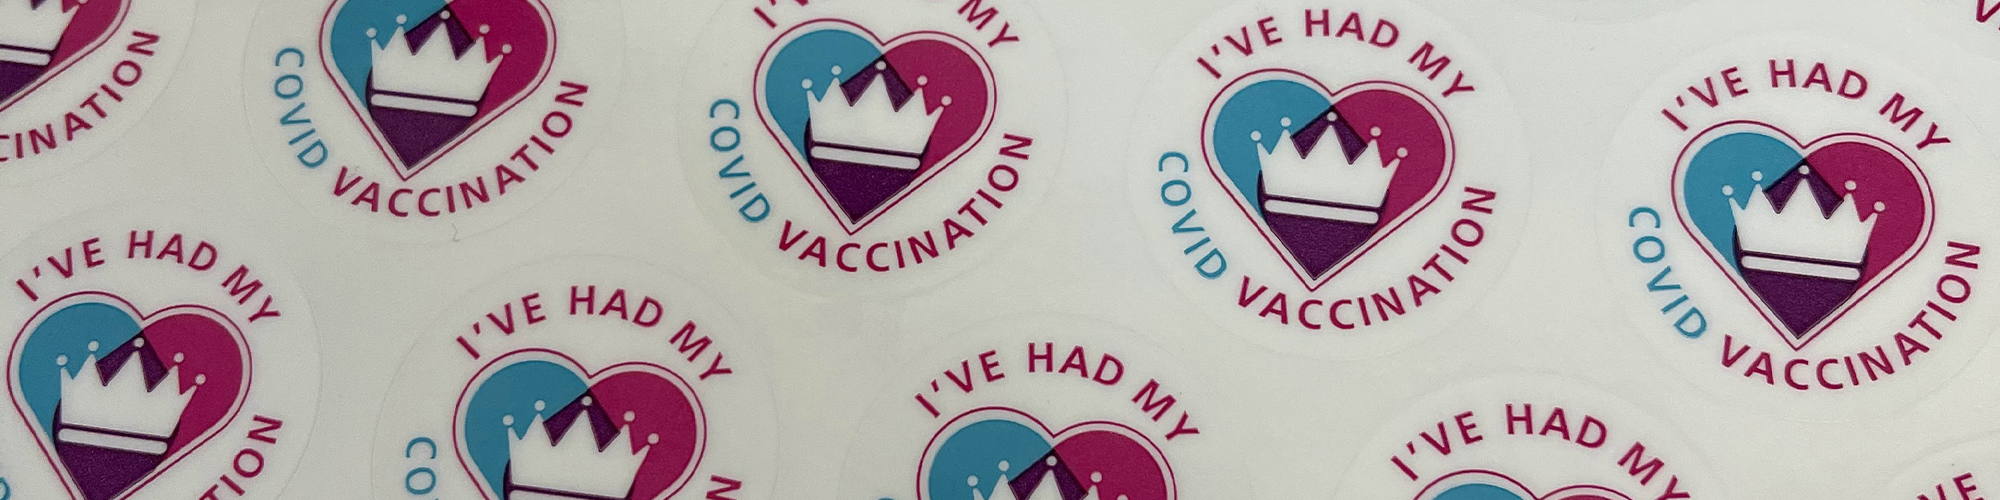 Harry Ward: Overcoming vaccine hesitancy among young people